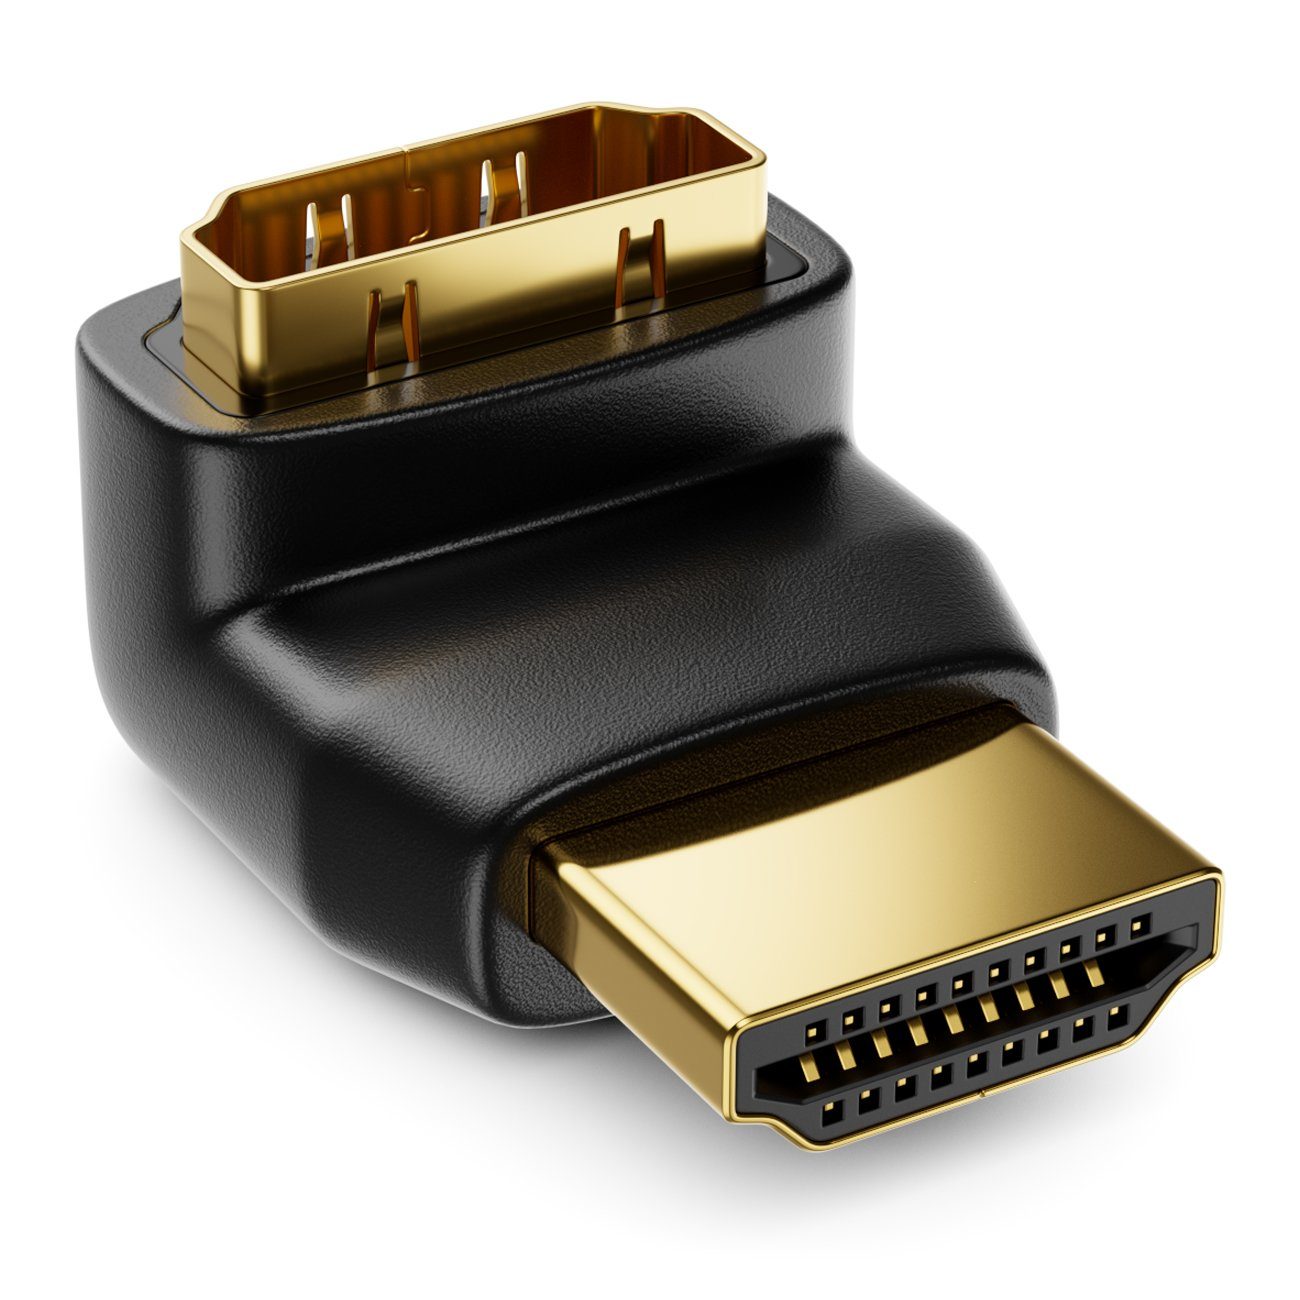 deleyCON »deleyCON HDMI Winkel Adapter - 90° Grad gewinkelt - HDMI Stecker  zu HDMI Buchse« HDMI-Kabel online kaufen | OTTO